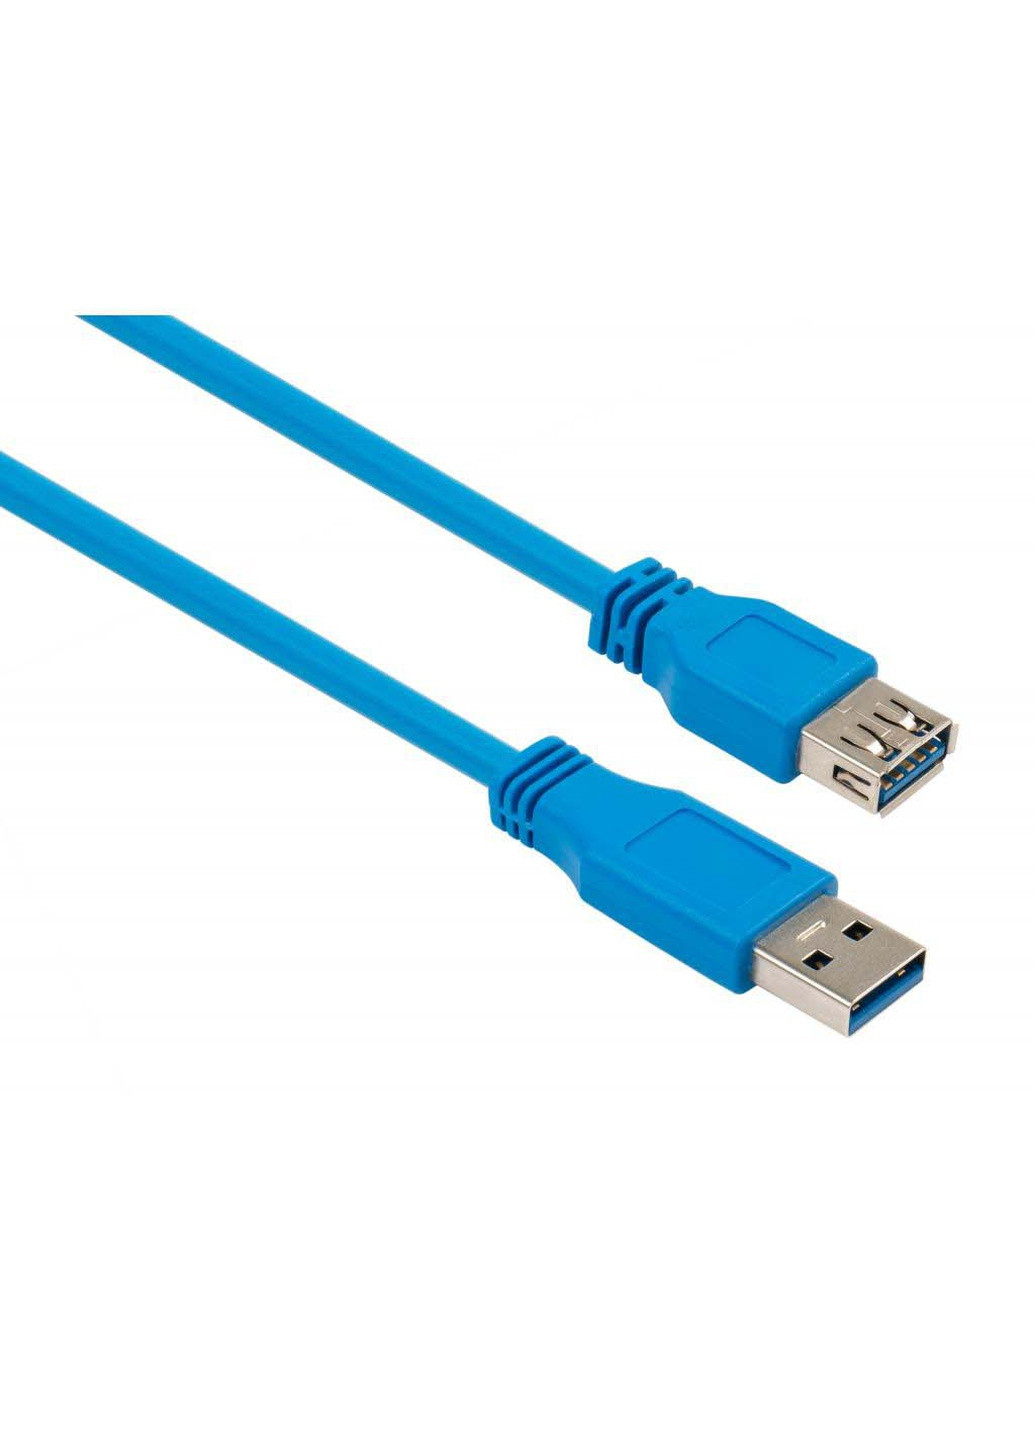 Дата кабель USB 3.0 AM / AF 1.8m (VCPUSB3AMAF1.8B) Vinga usb 3.0 am/af 1.8m (239382688)